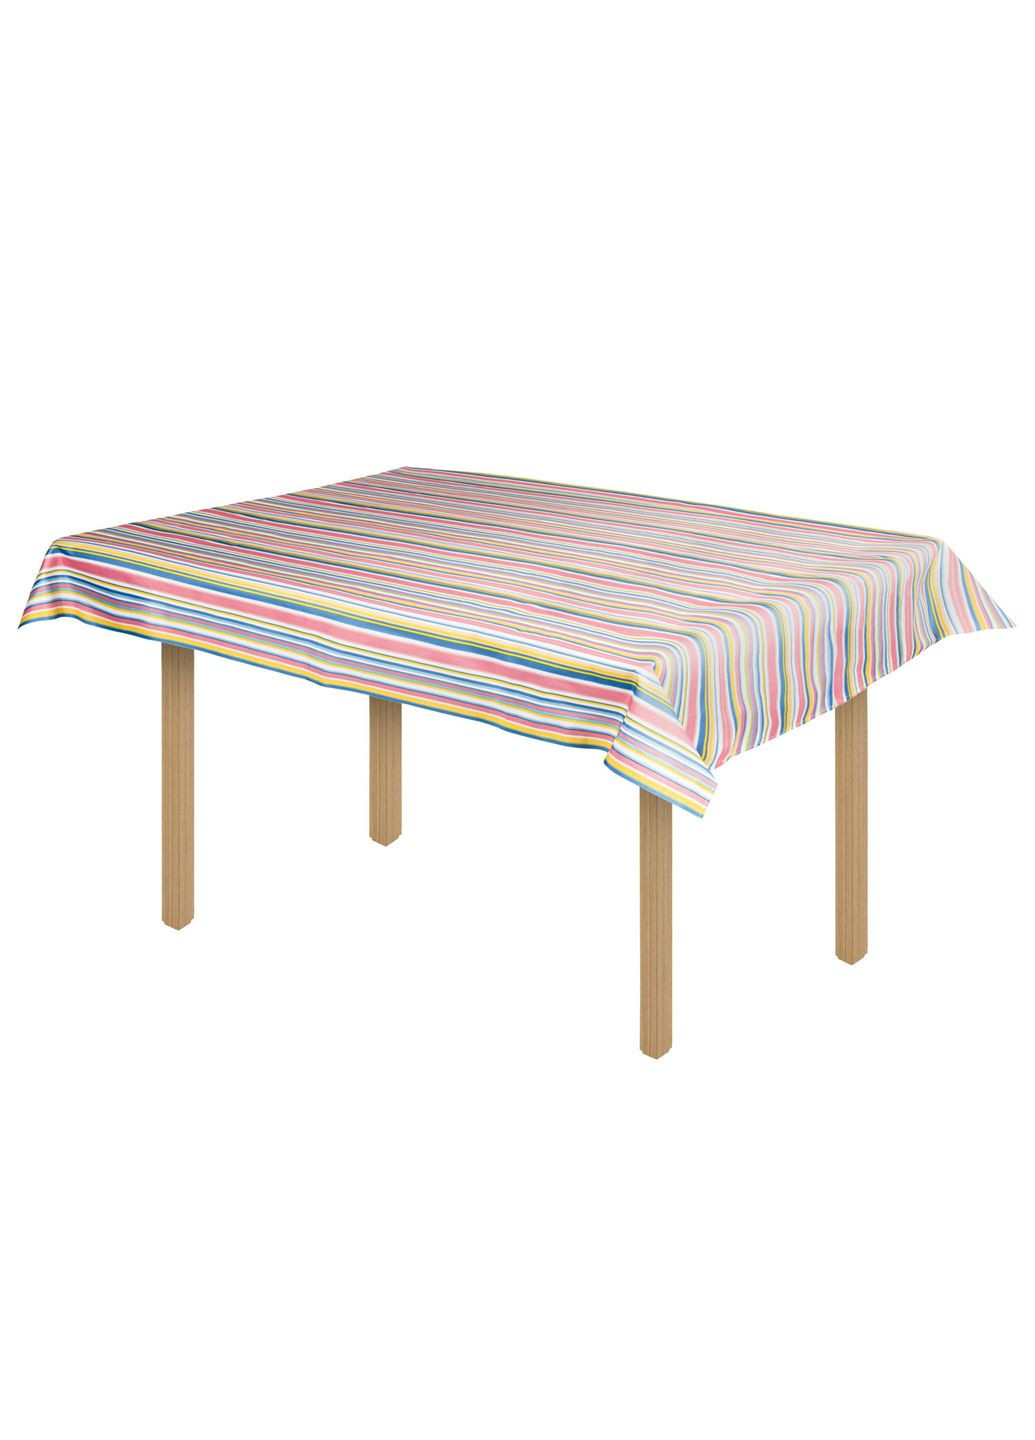 Скатерть на стол прямоугольная в полоску 130х160см разноцветная Lidl Livarno home (292800135)